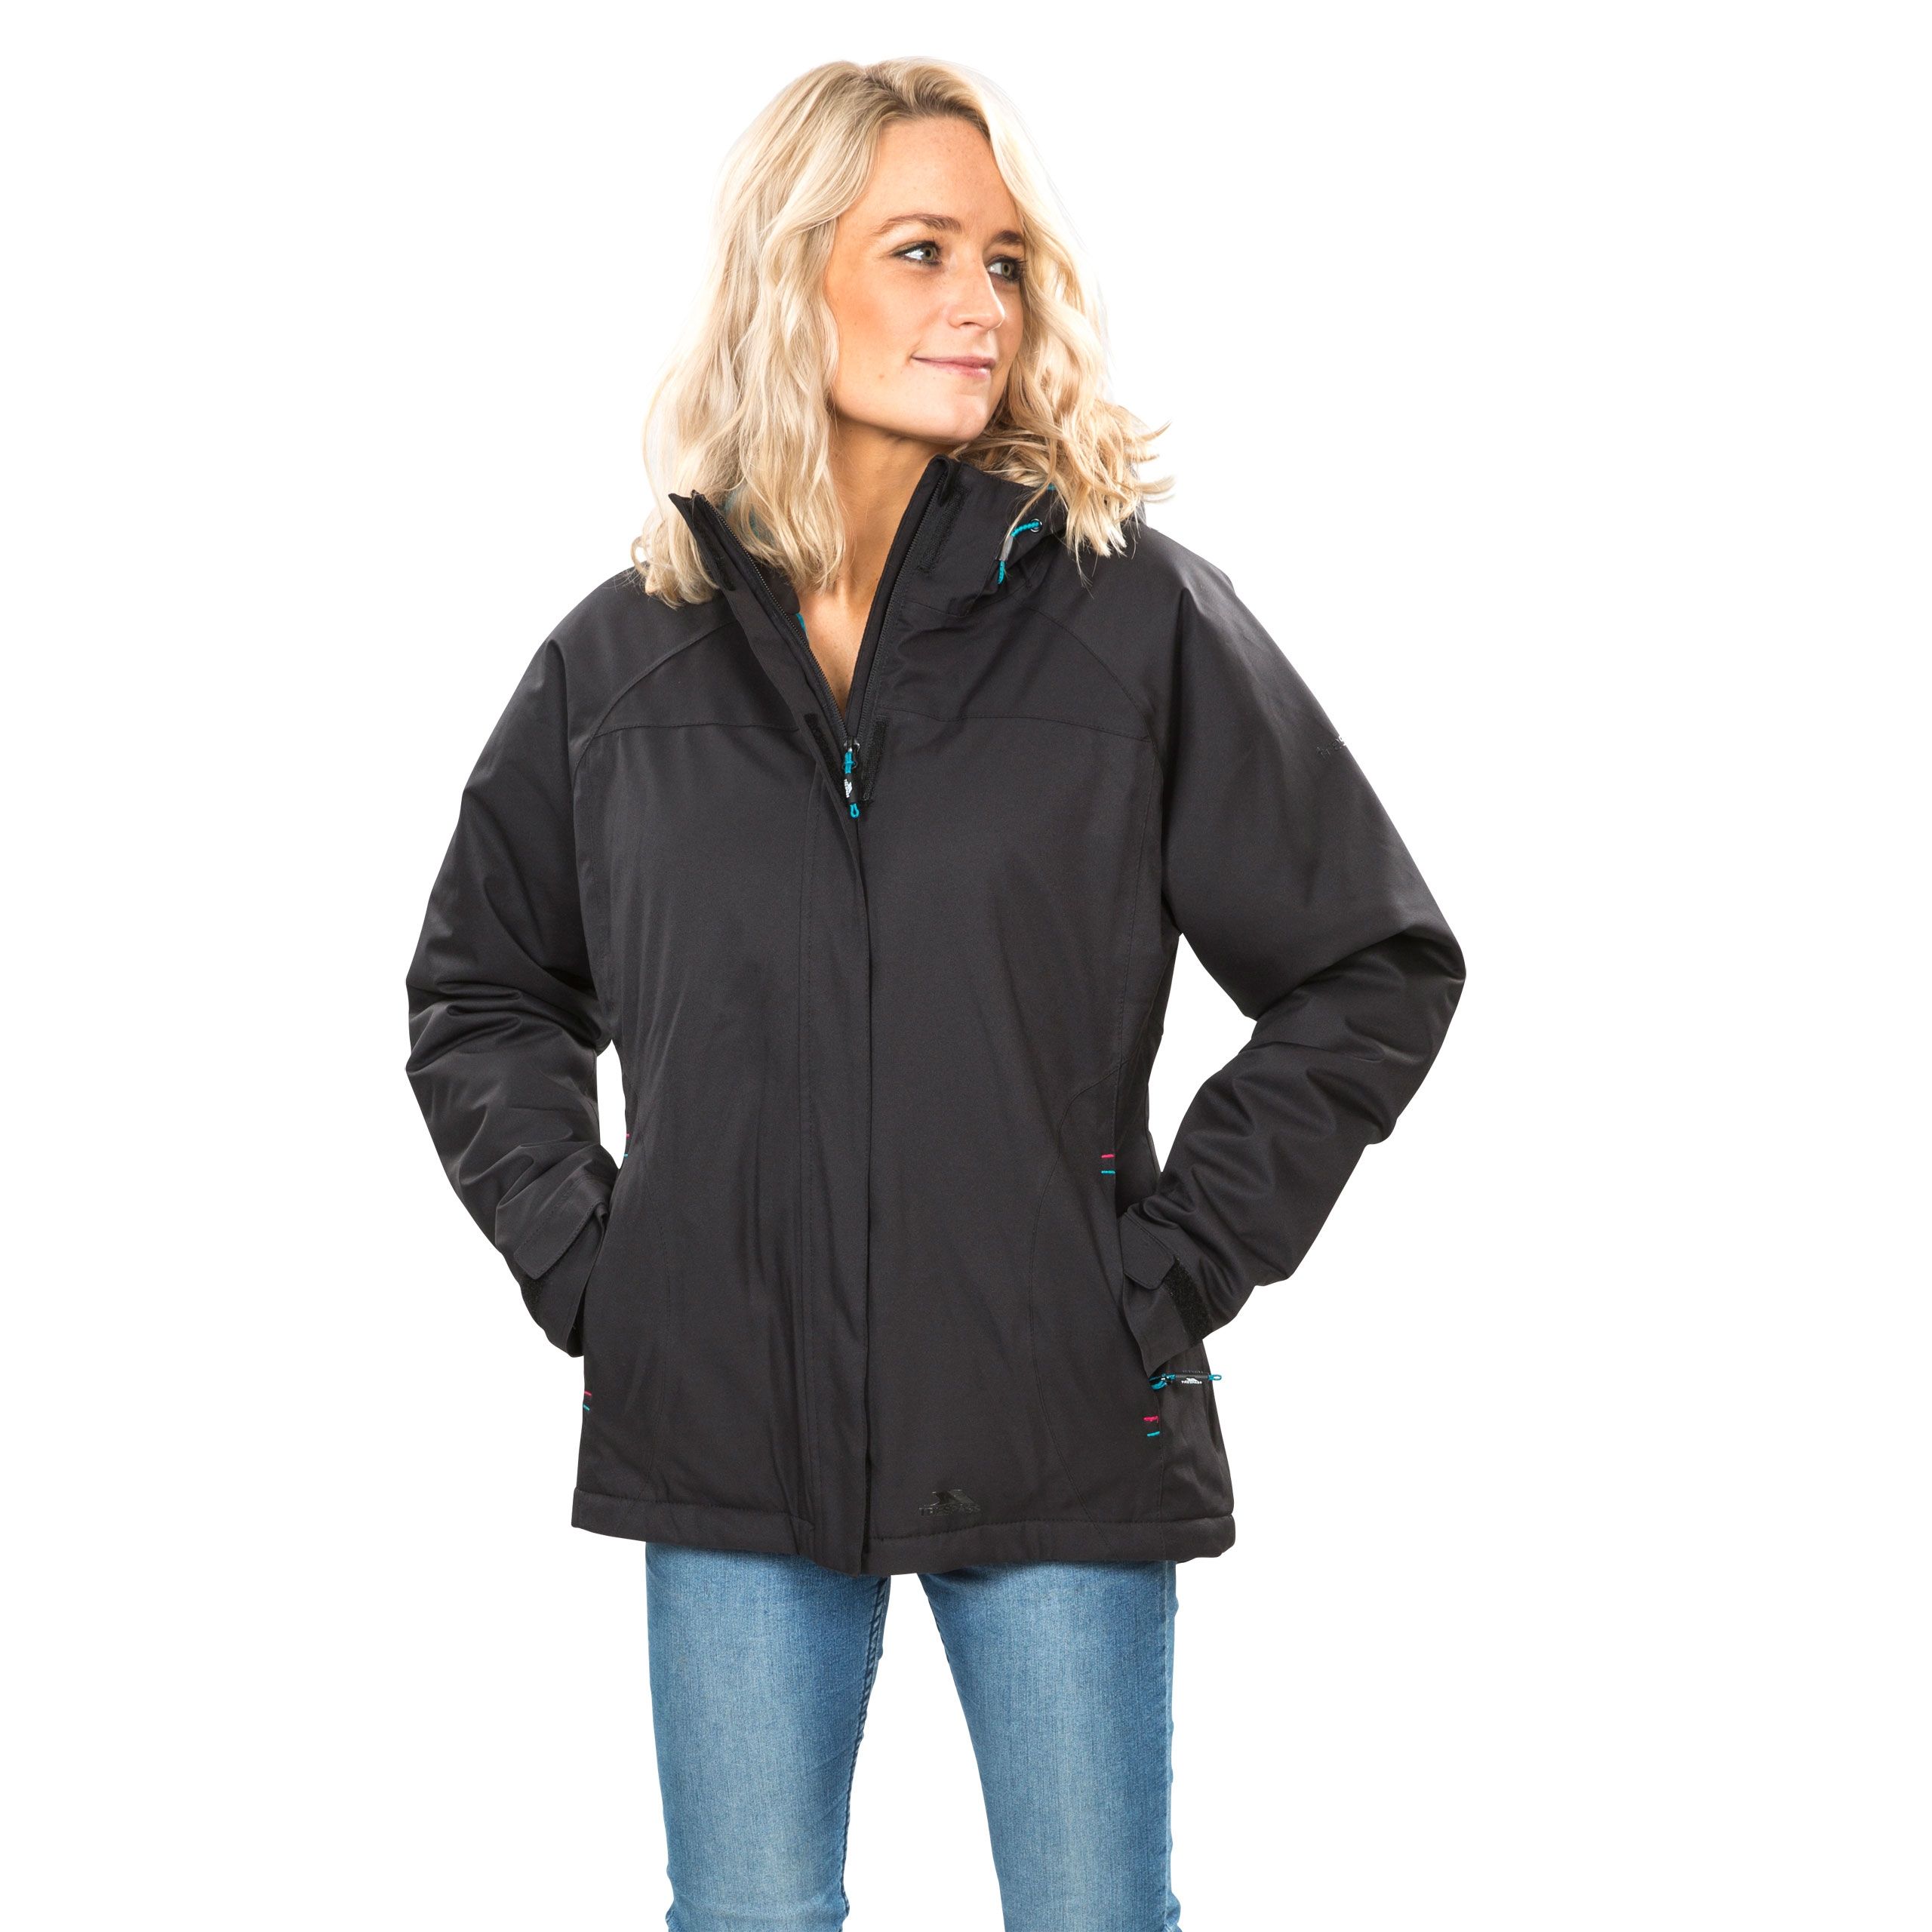 Startle Womens Waterproof Jacket